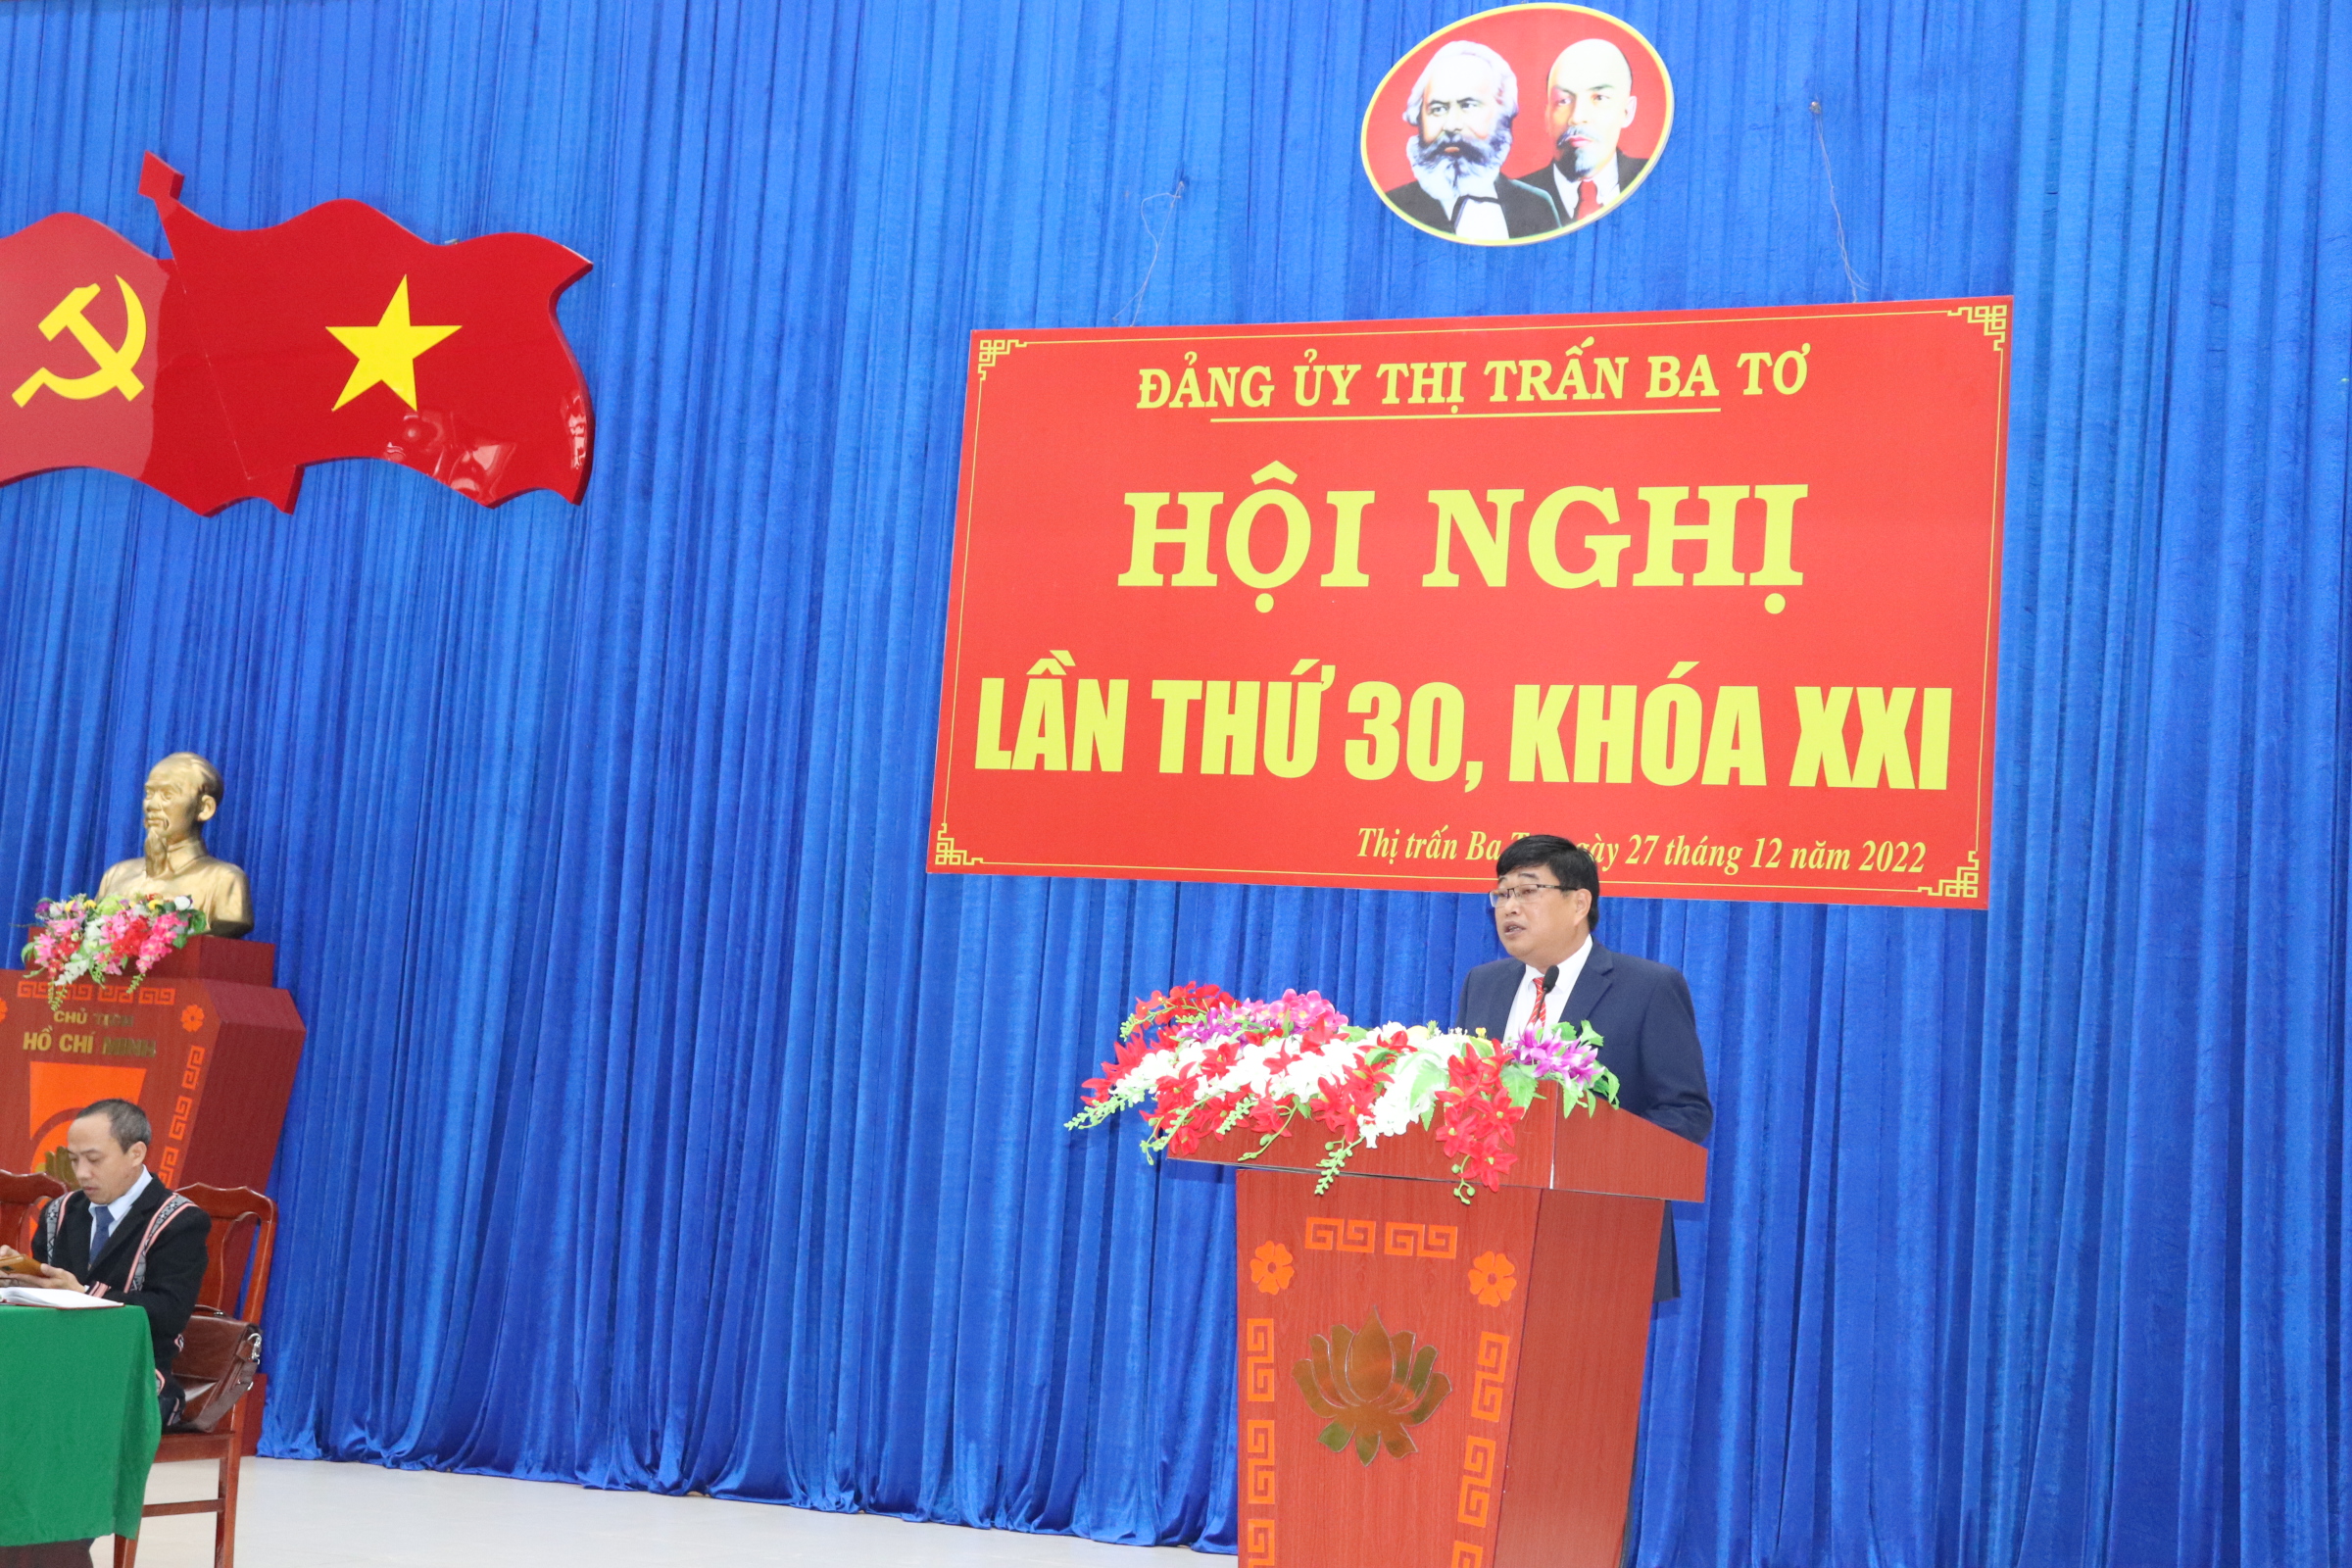 Đảng ủy thị trấn Ba Tơ tổ chức hội nghị đánh giá công tác xây dựng Đảng năm 2022, triển khai nhiệm vụ năm 2023